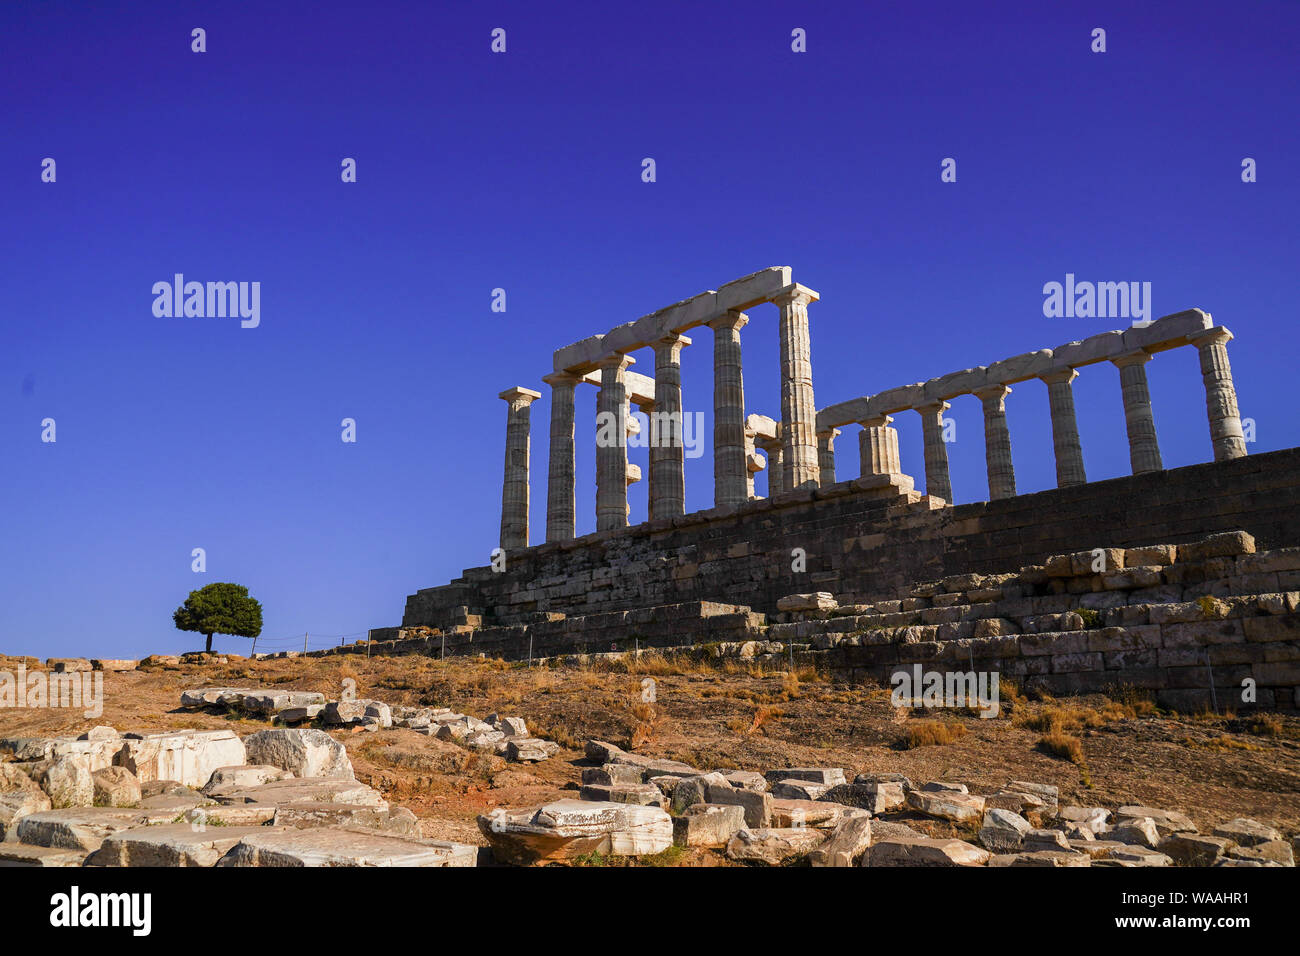 Athena and poseidon immagini e fotografie stock ad alta risoluzione -  Pagina 2 - Alamy